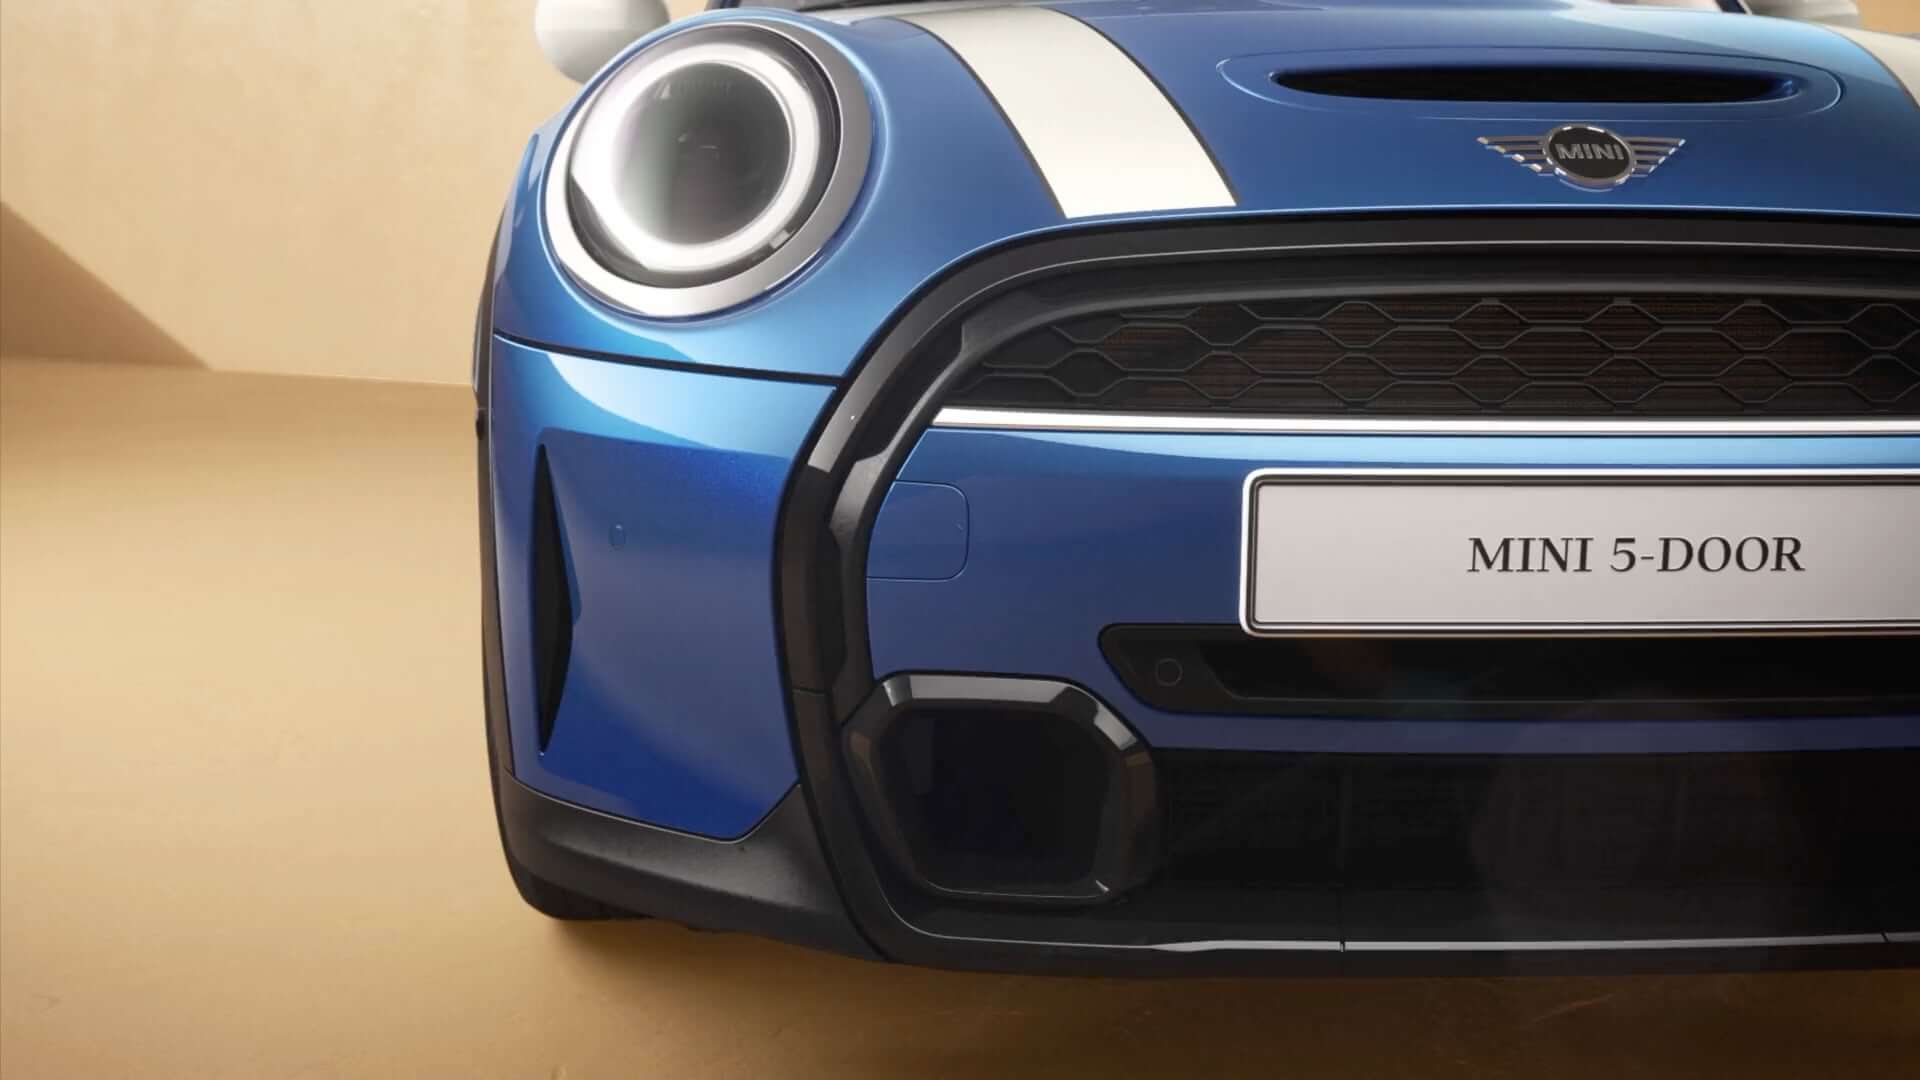 MINI Hatch 5 Portas - visão frontal - azul e branco